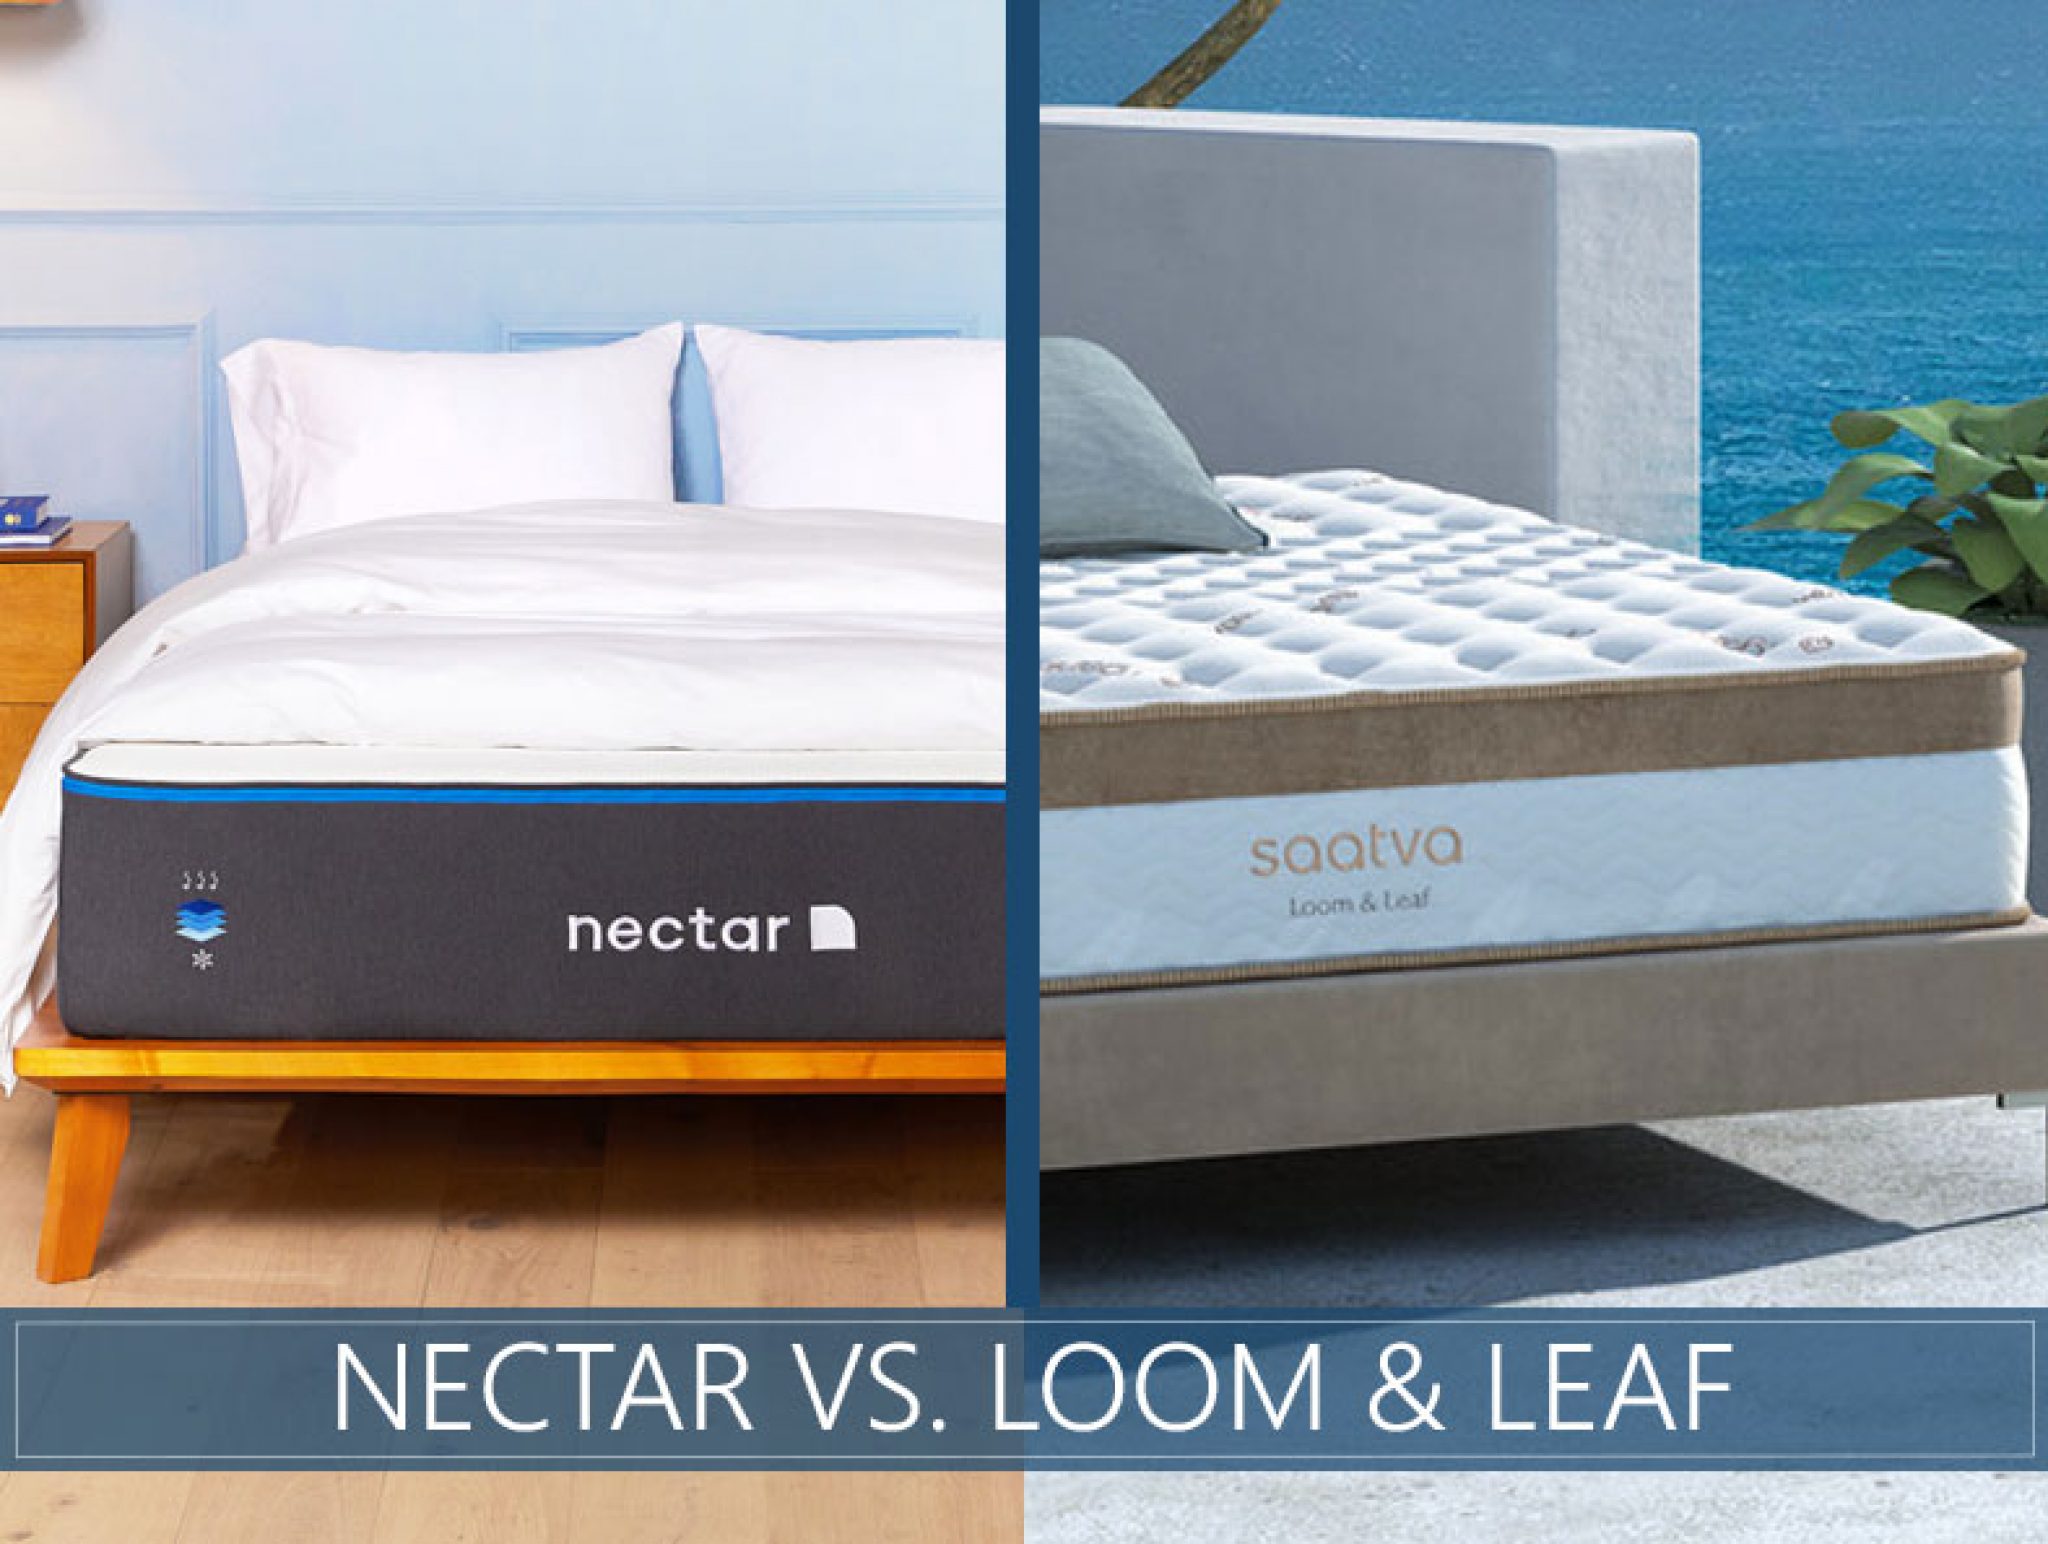 nectar vs casper comfort